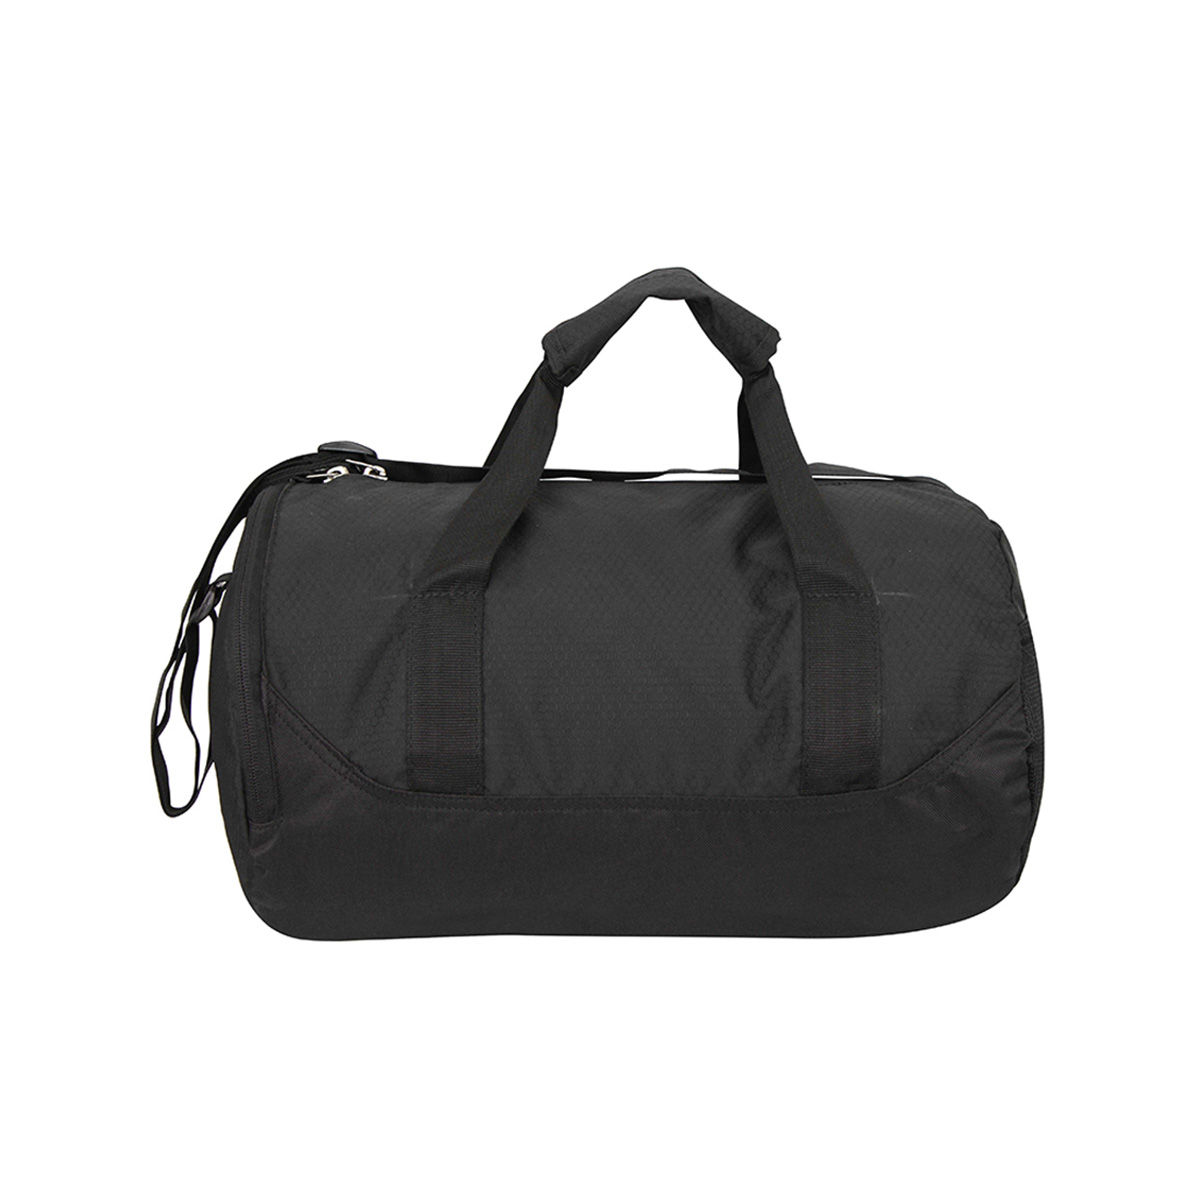 Buy Nivia Beast Gym Bag - 4 - Black Online